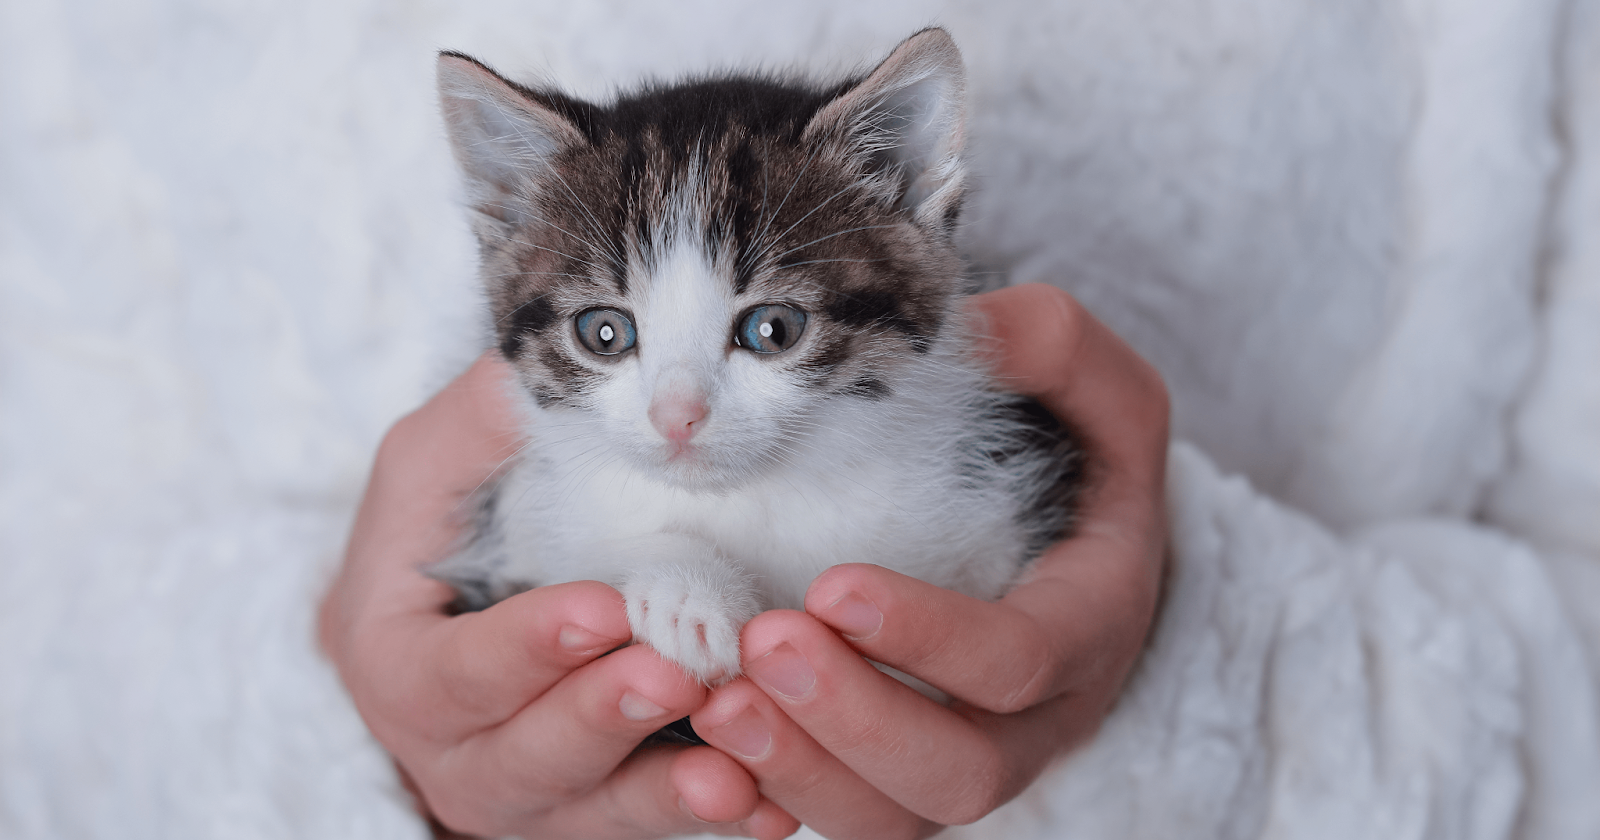 Small kitten being held in hands